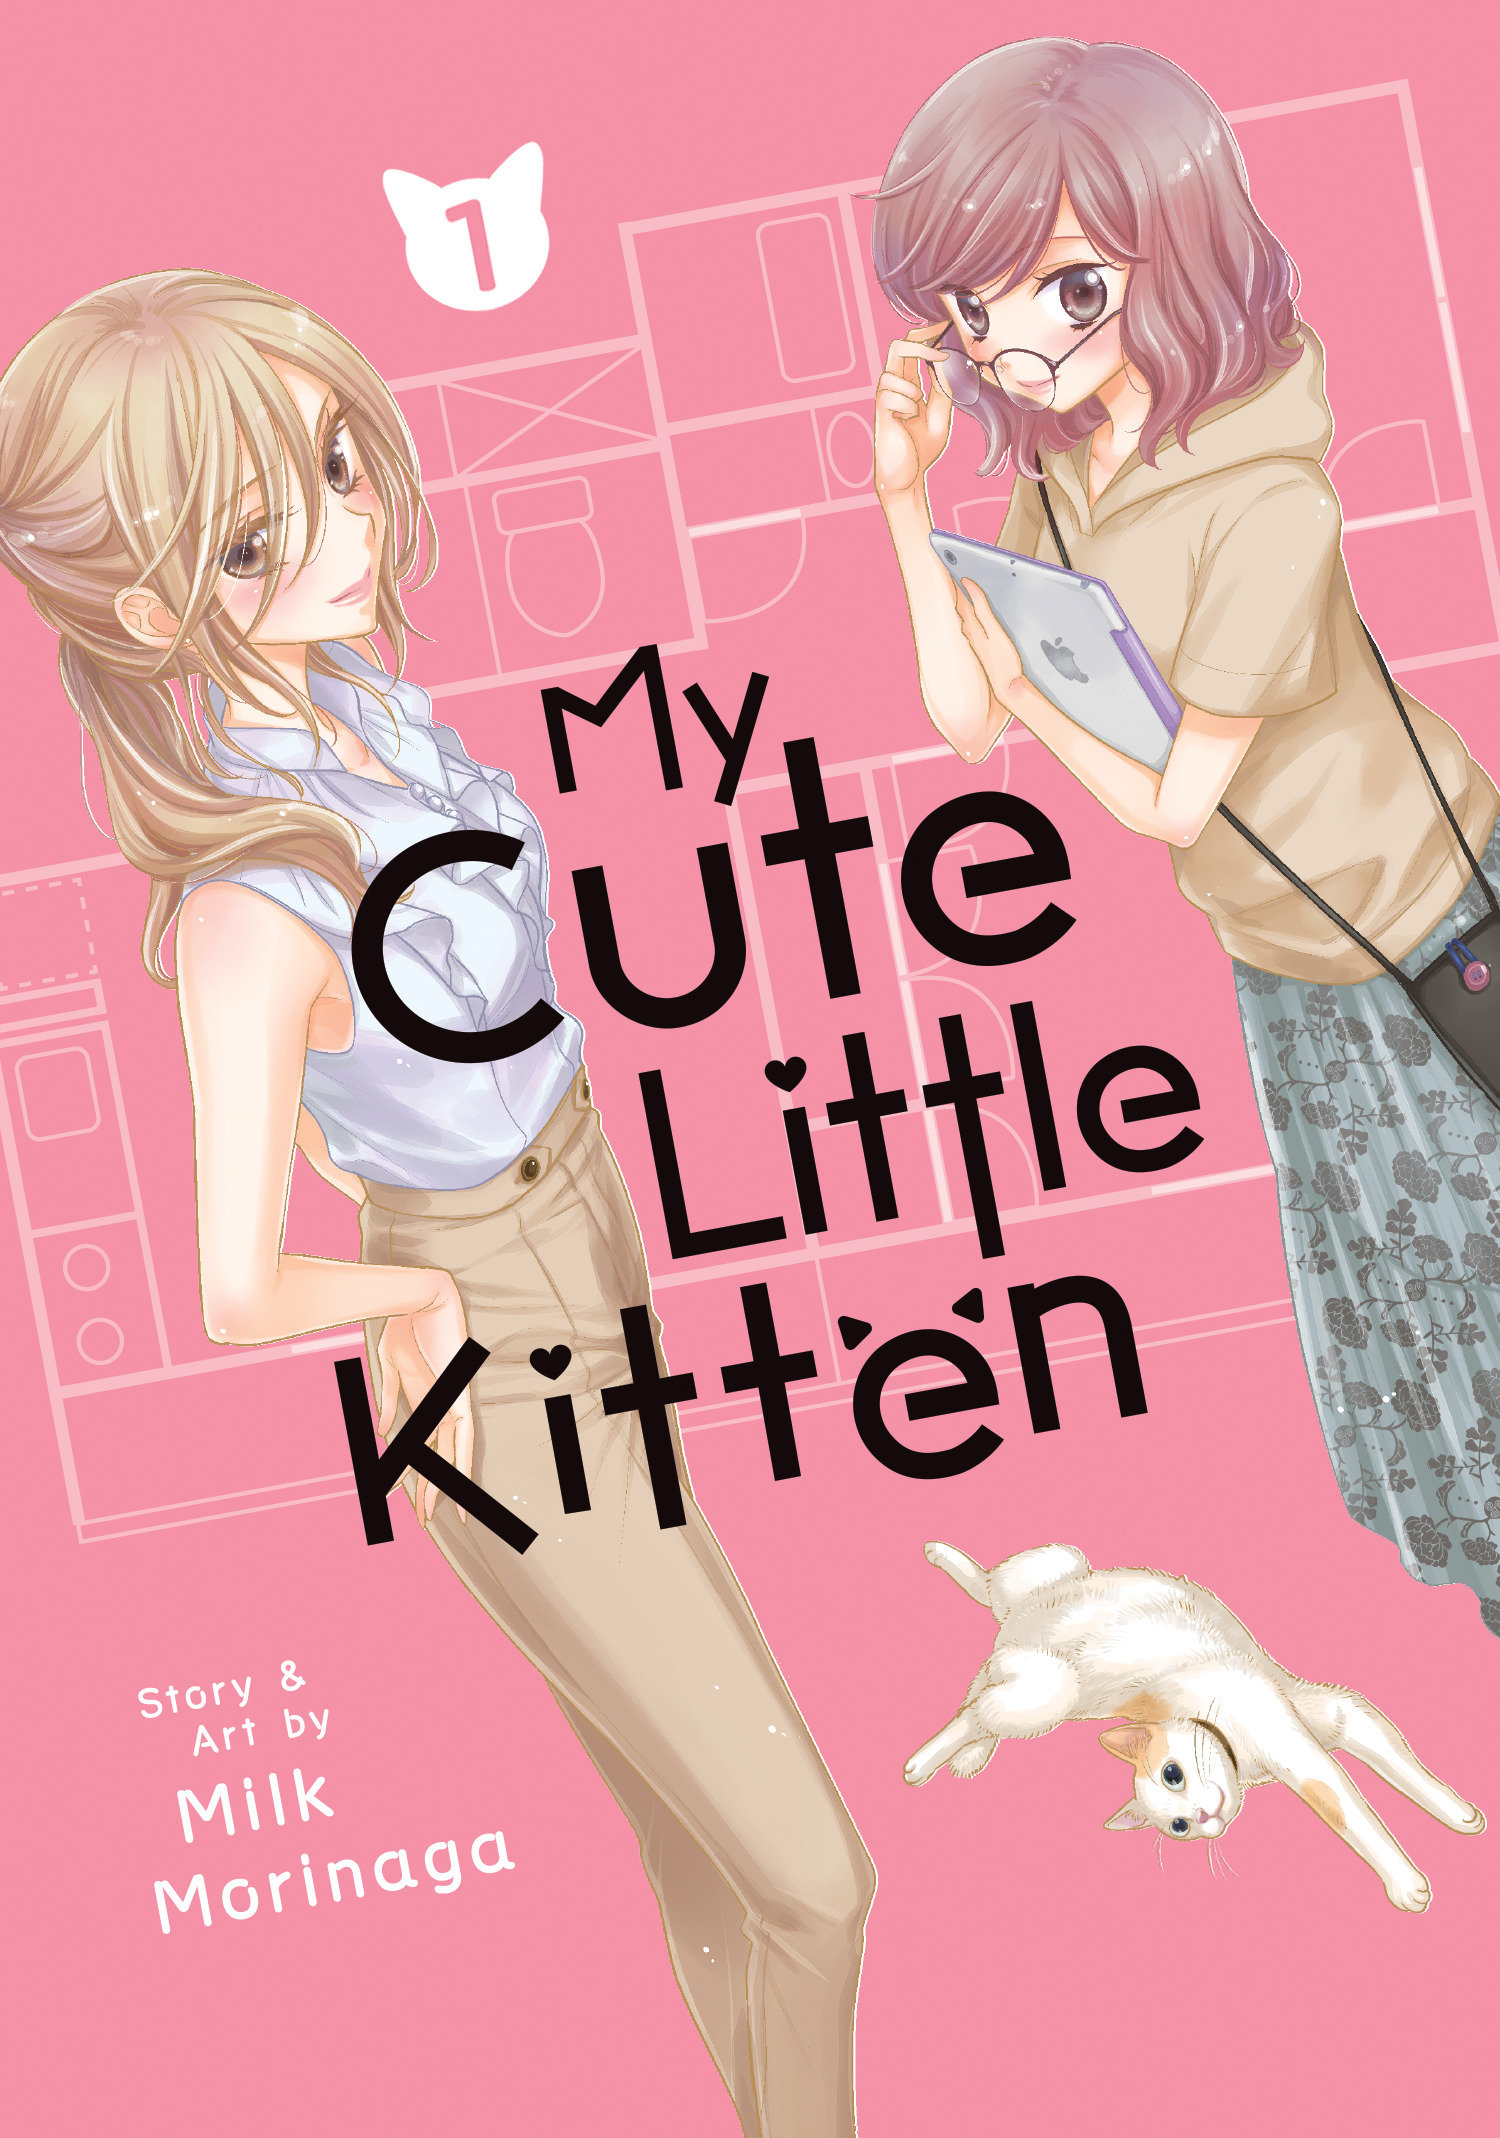 My Cute Little Kitten Manga Volume 1